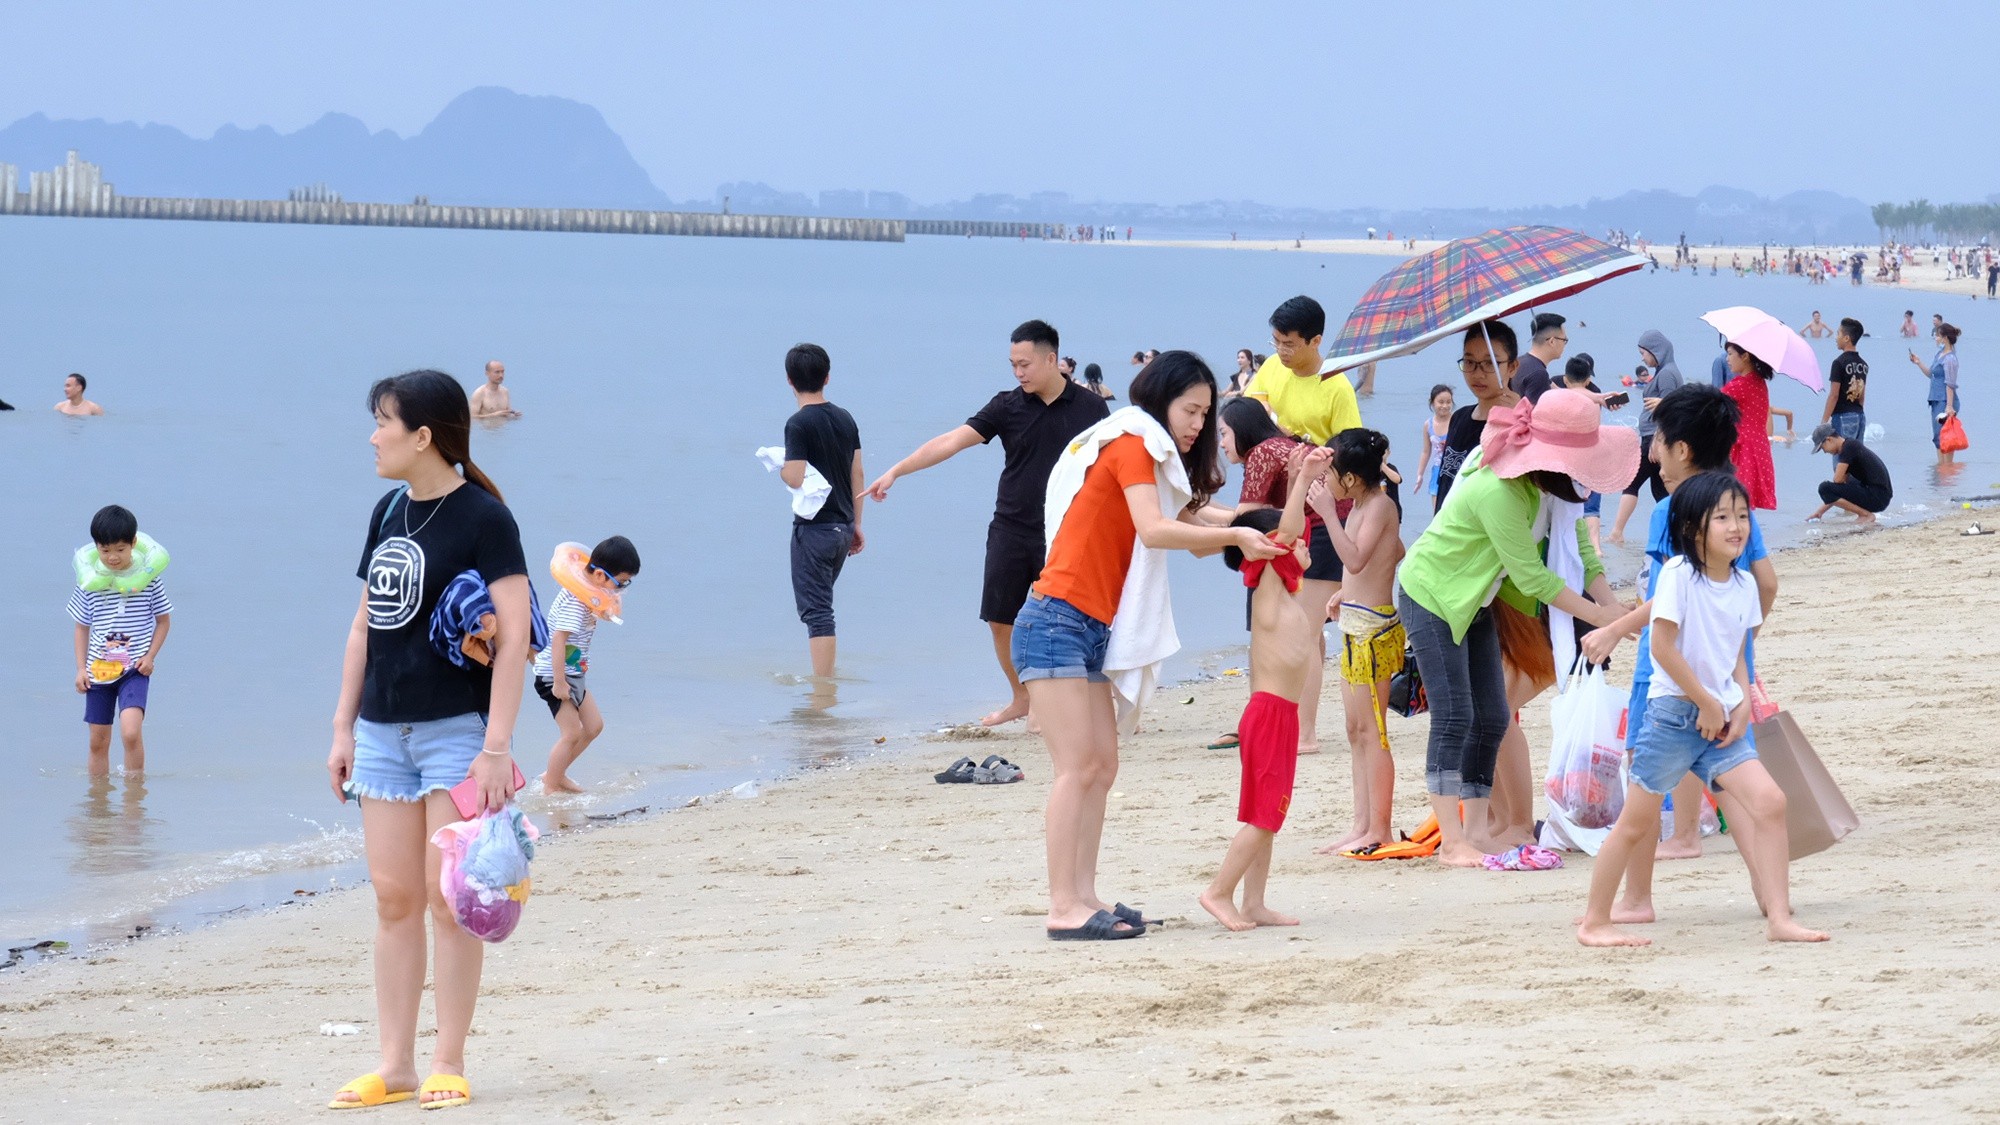 
Đông đảo du khách đổ về Quảng Ninh trong dịp lễ vừa qua
